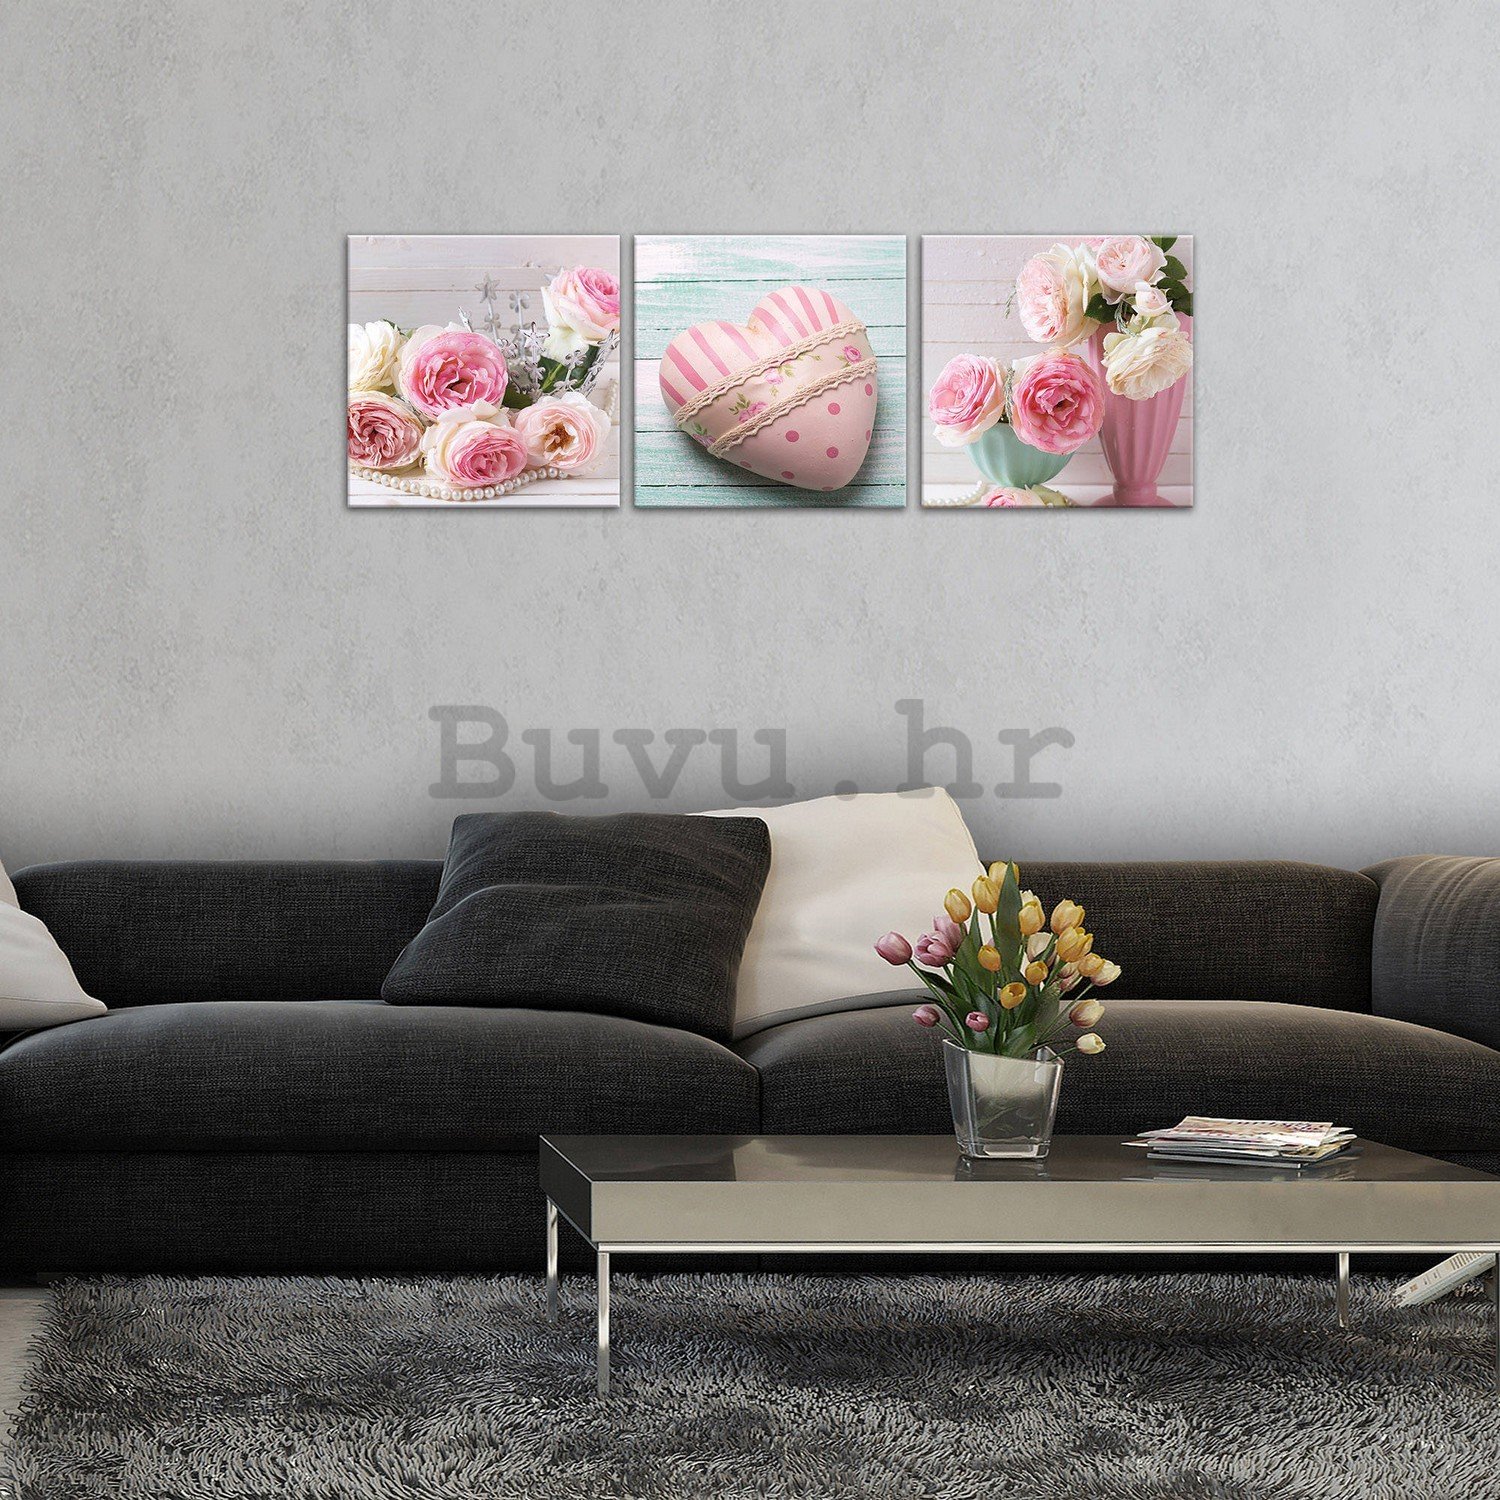 Slika na platnu: Ruže i Srce - set 3kom 25x25cm